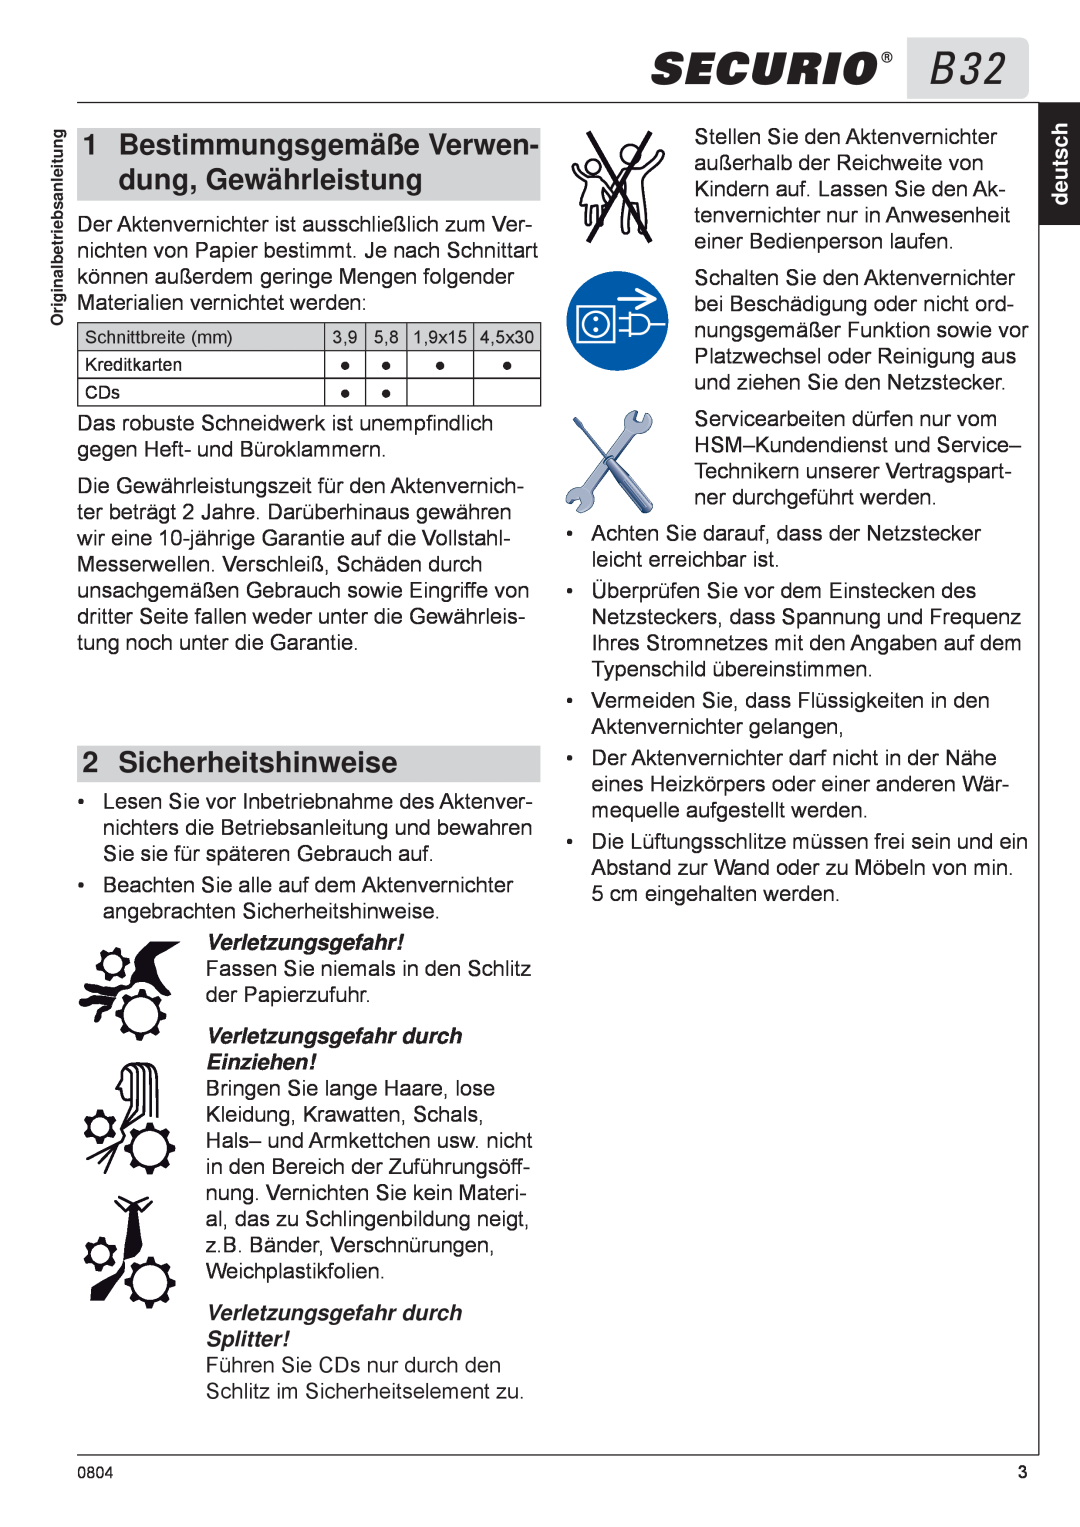 HSM B32 manual Bestimmungsgemäße Verwen, dung, Gewährleistung, Sicherheitshinweise, Verletzungsgefahr, deutsch 